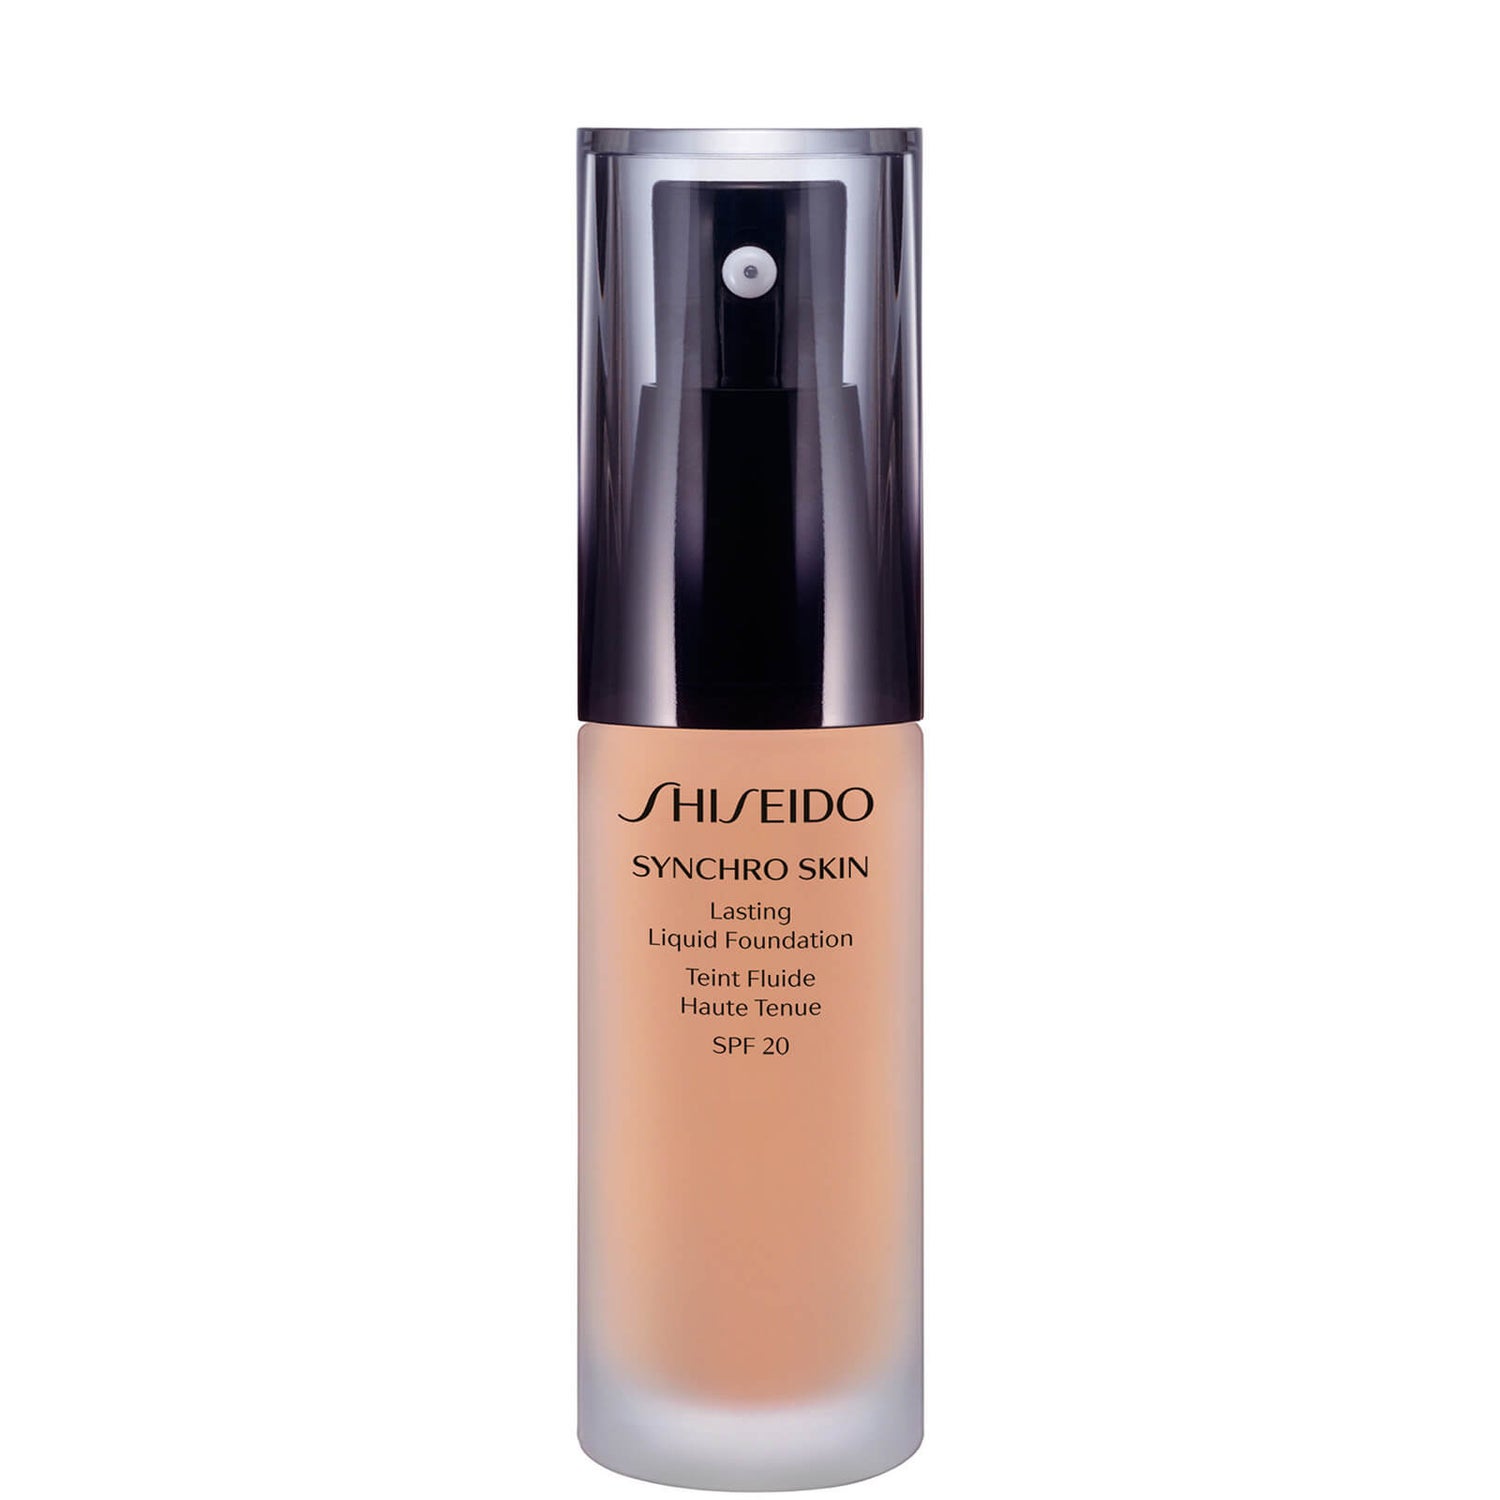 Shiseido Synchro Skin Lasting Flüssigkeits-Foundation LSF 20 (30 ml) (verschiedene Farbtöne)